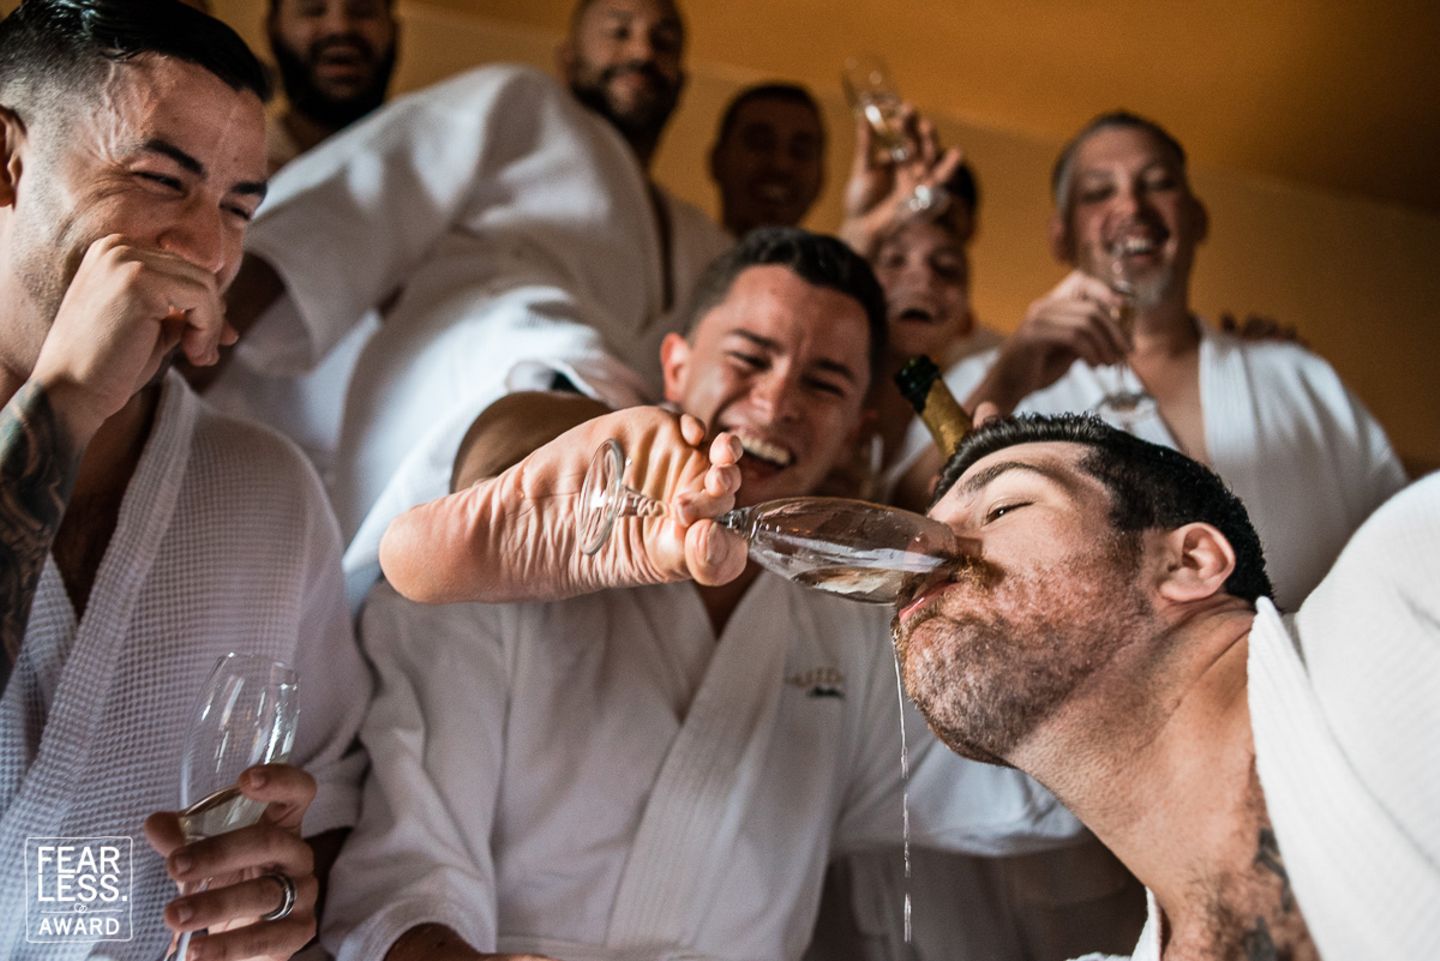 Hochzeitsfoto: Männer trinken